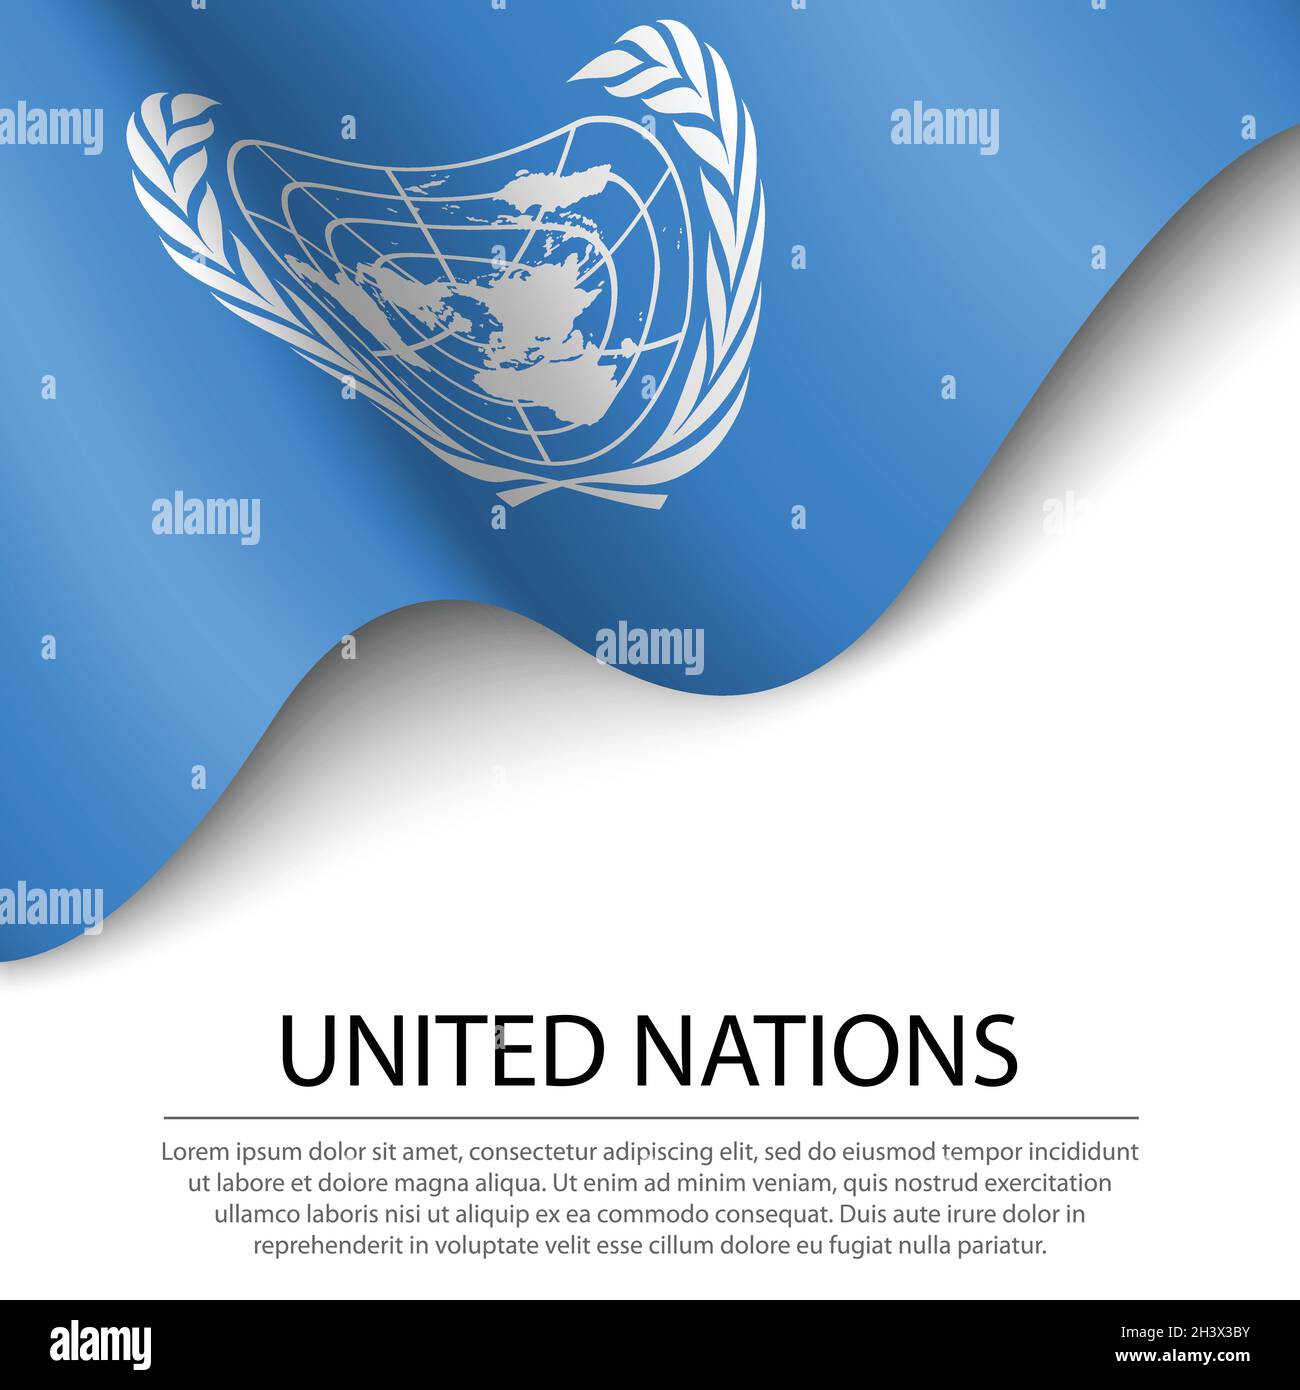 Cờ Liên Hiệp Quốc: Cờ Liên Hiệp Quốc là biểu tượng của tình đoàn kết và hòa bình trên toàn cầu. Hãy cùng khám phá những hình ảnh đẹp về cờ này và hiểu rõ hơn về ý nghĩa của nó trong việc thúc đẩy sự hiểu biết và hợp tác giữa các quốc gia.